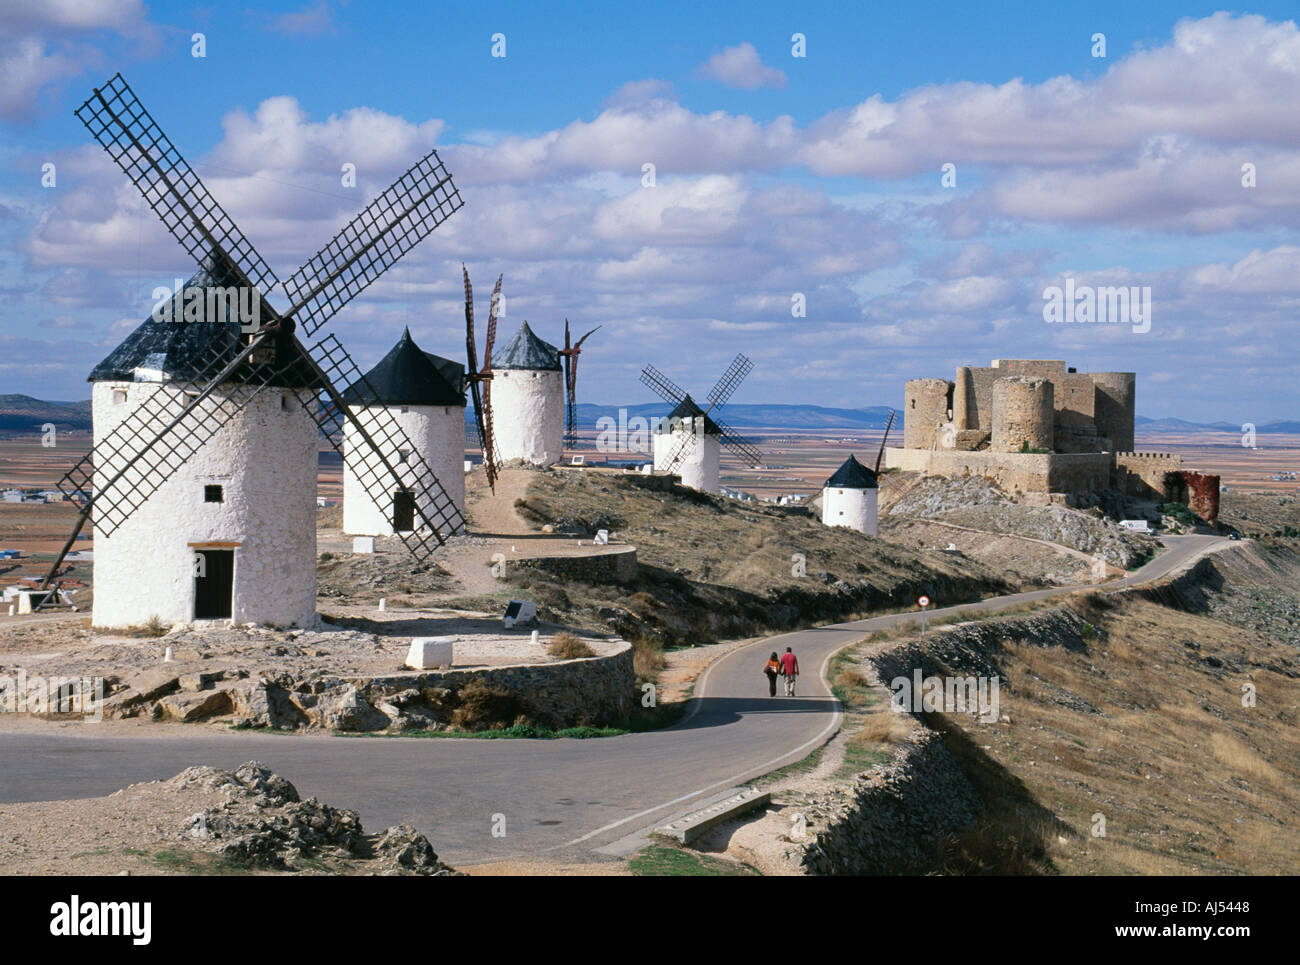 Les moulins à vent et le château avec vue sur les plaines de Castilla La Mancha Espagne couple en train de marcher ensemble. Voyages en Espagne tourisme culture Banque D'Images